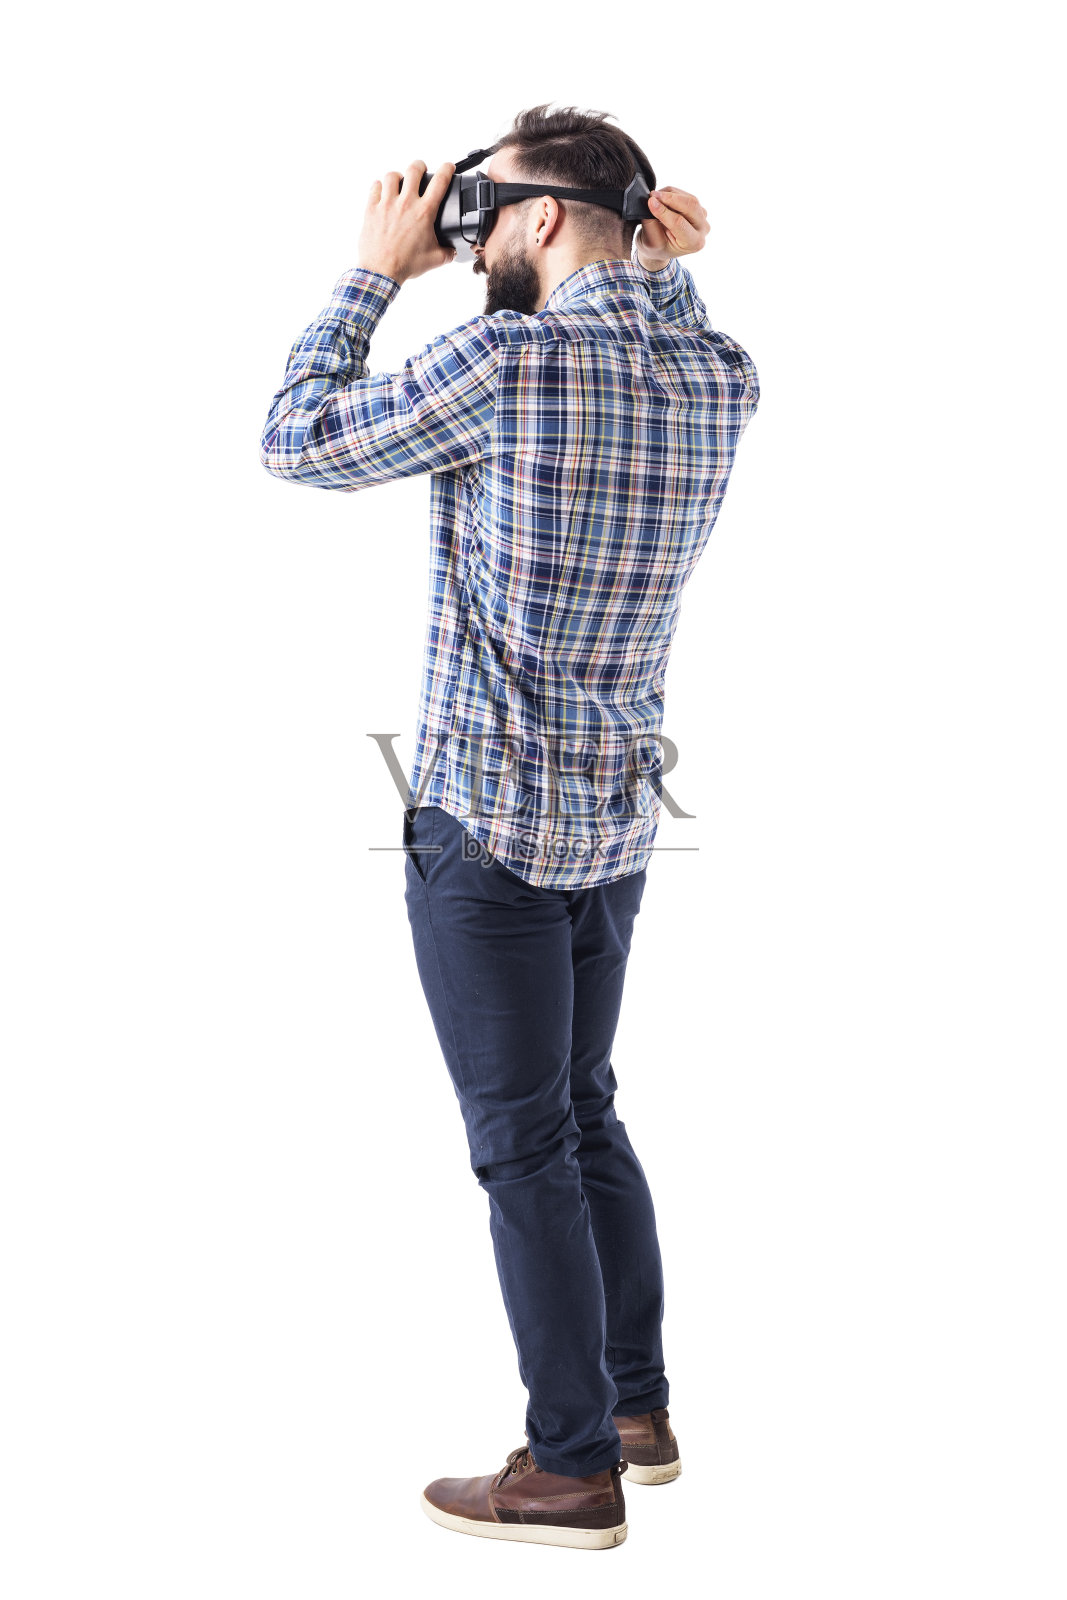 年轻的胡子潇洒的休闲男人戴上虚拟现实眼镜戴在头上。照片摄影图片